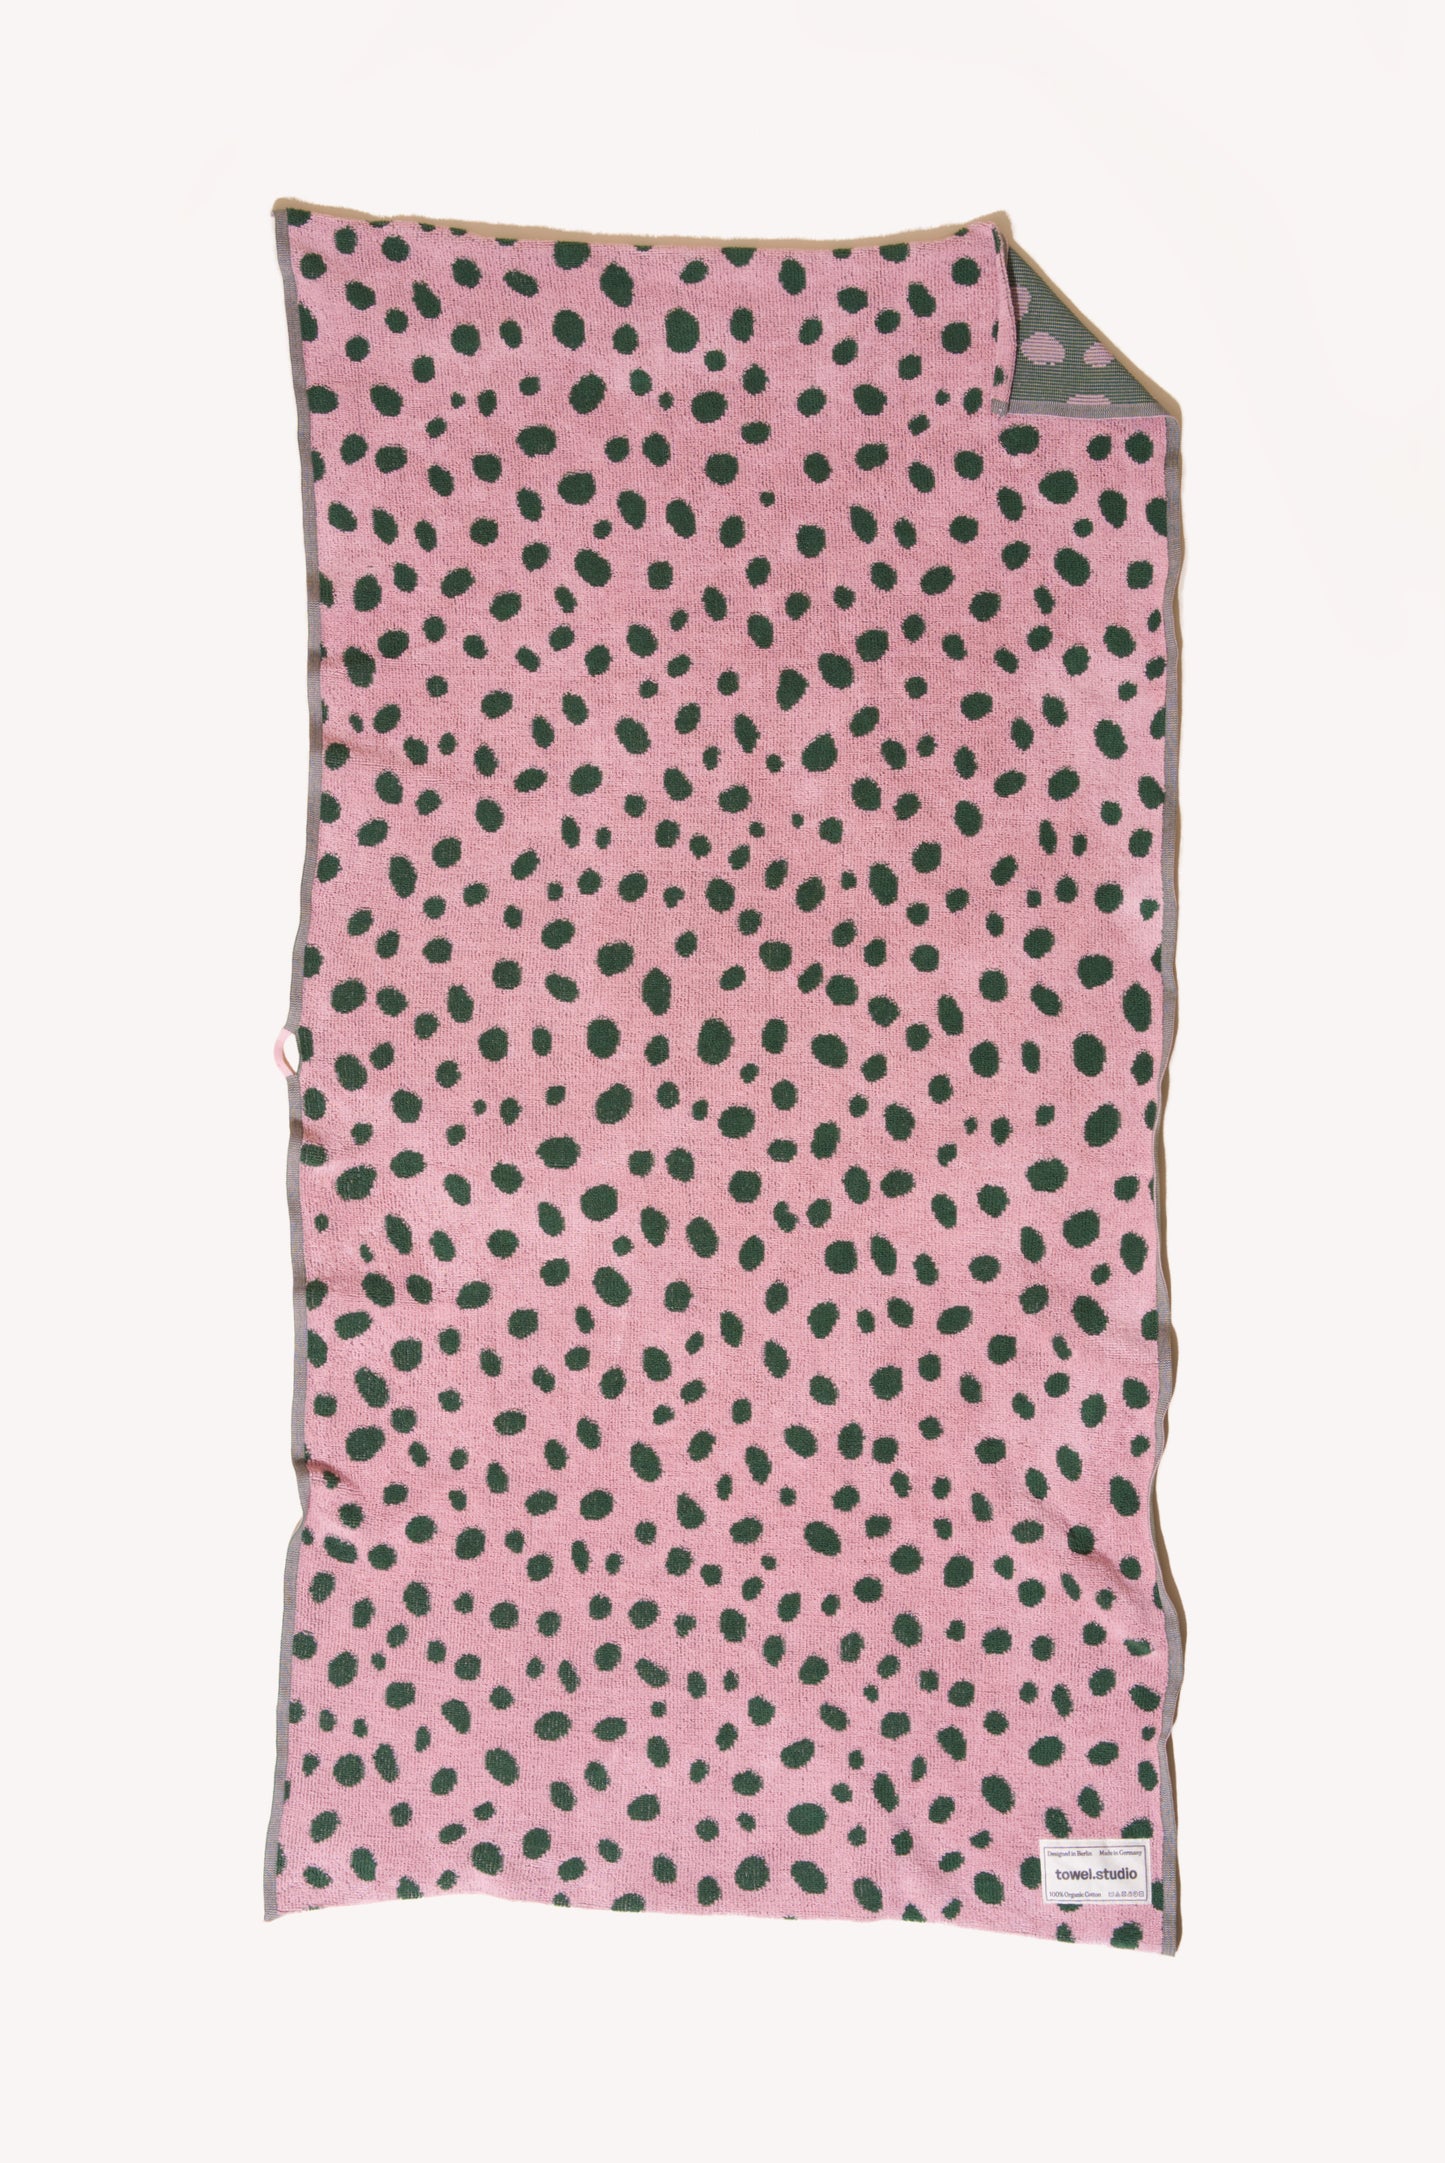 Pebbles Bath Towel | Pink & Green